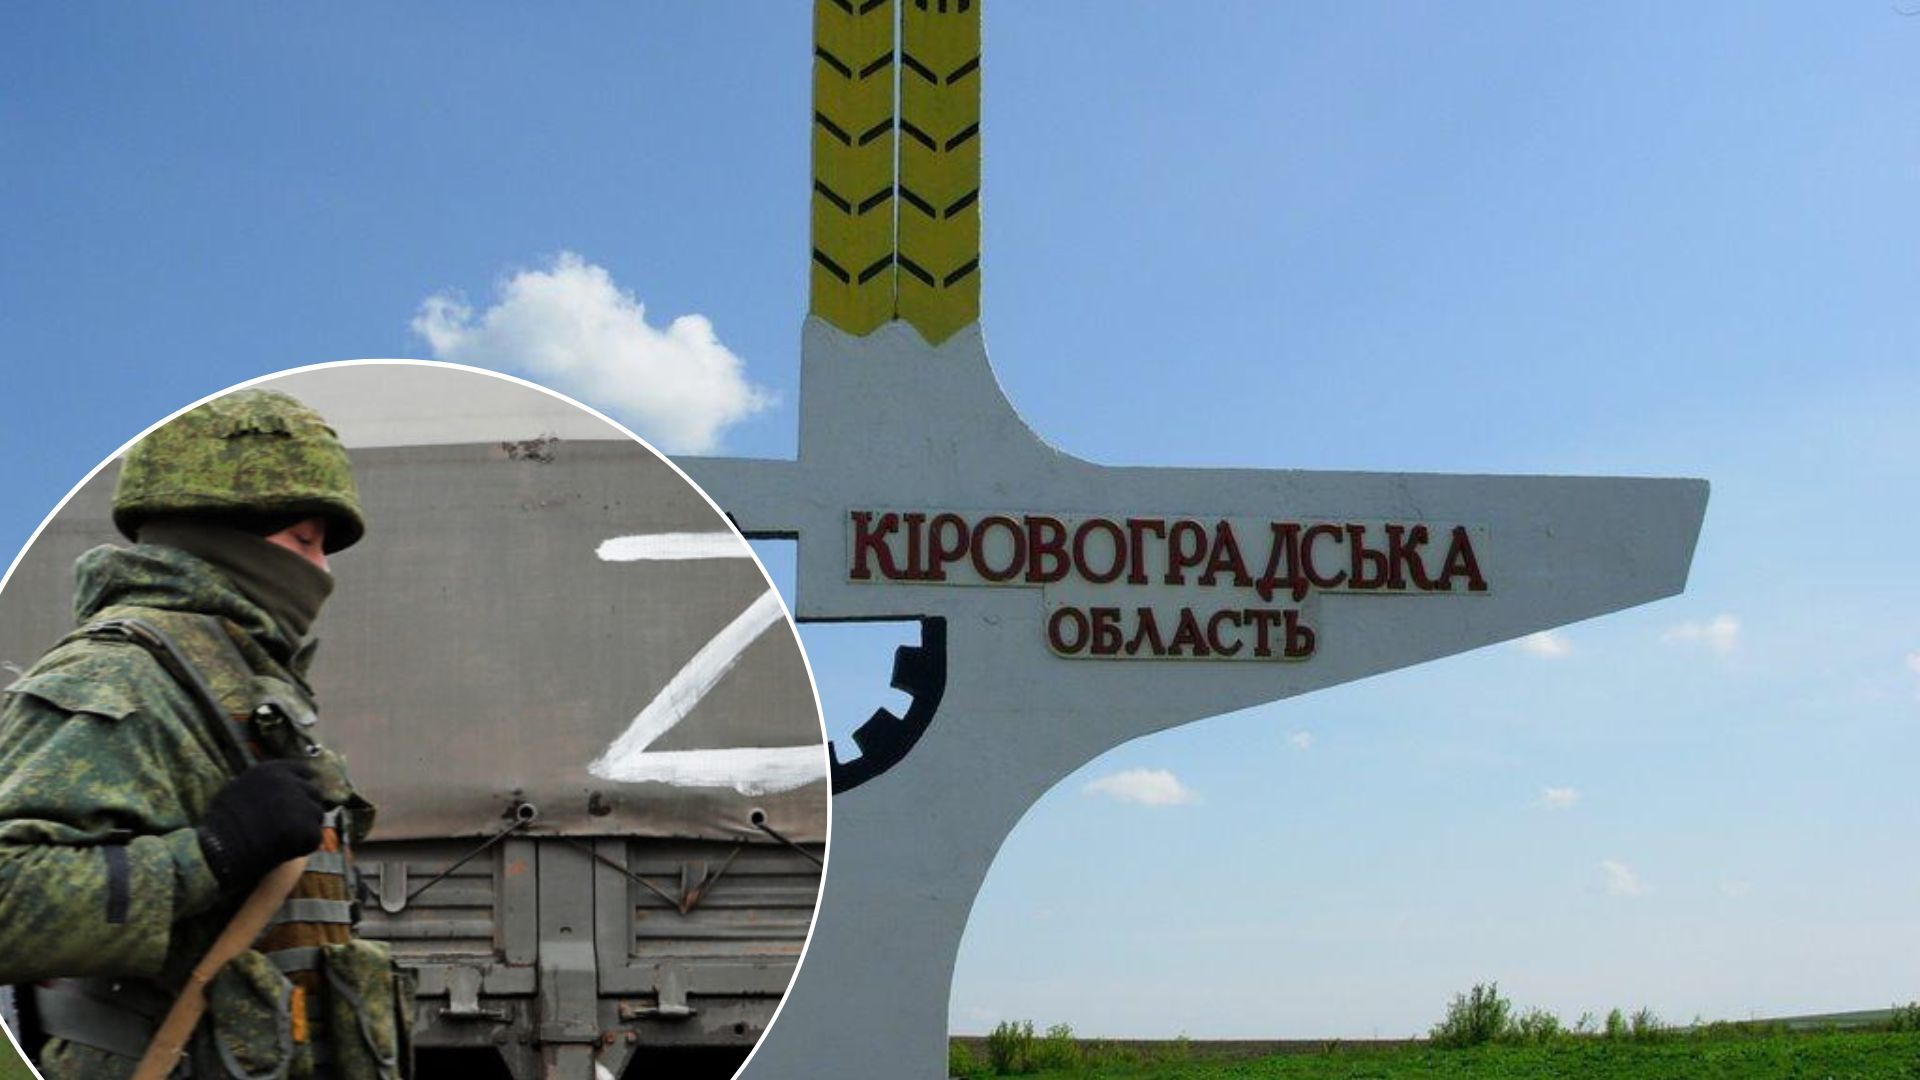 Обстріл Кіровоградської області 15 вересня - під удар потрапила інфраструктура